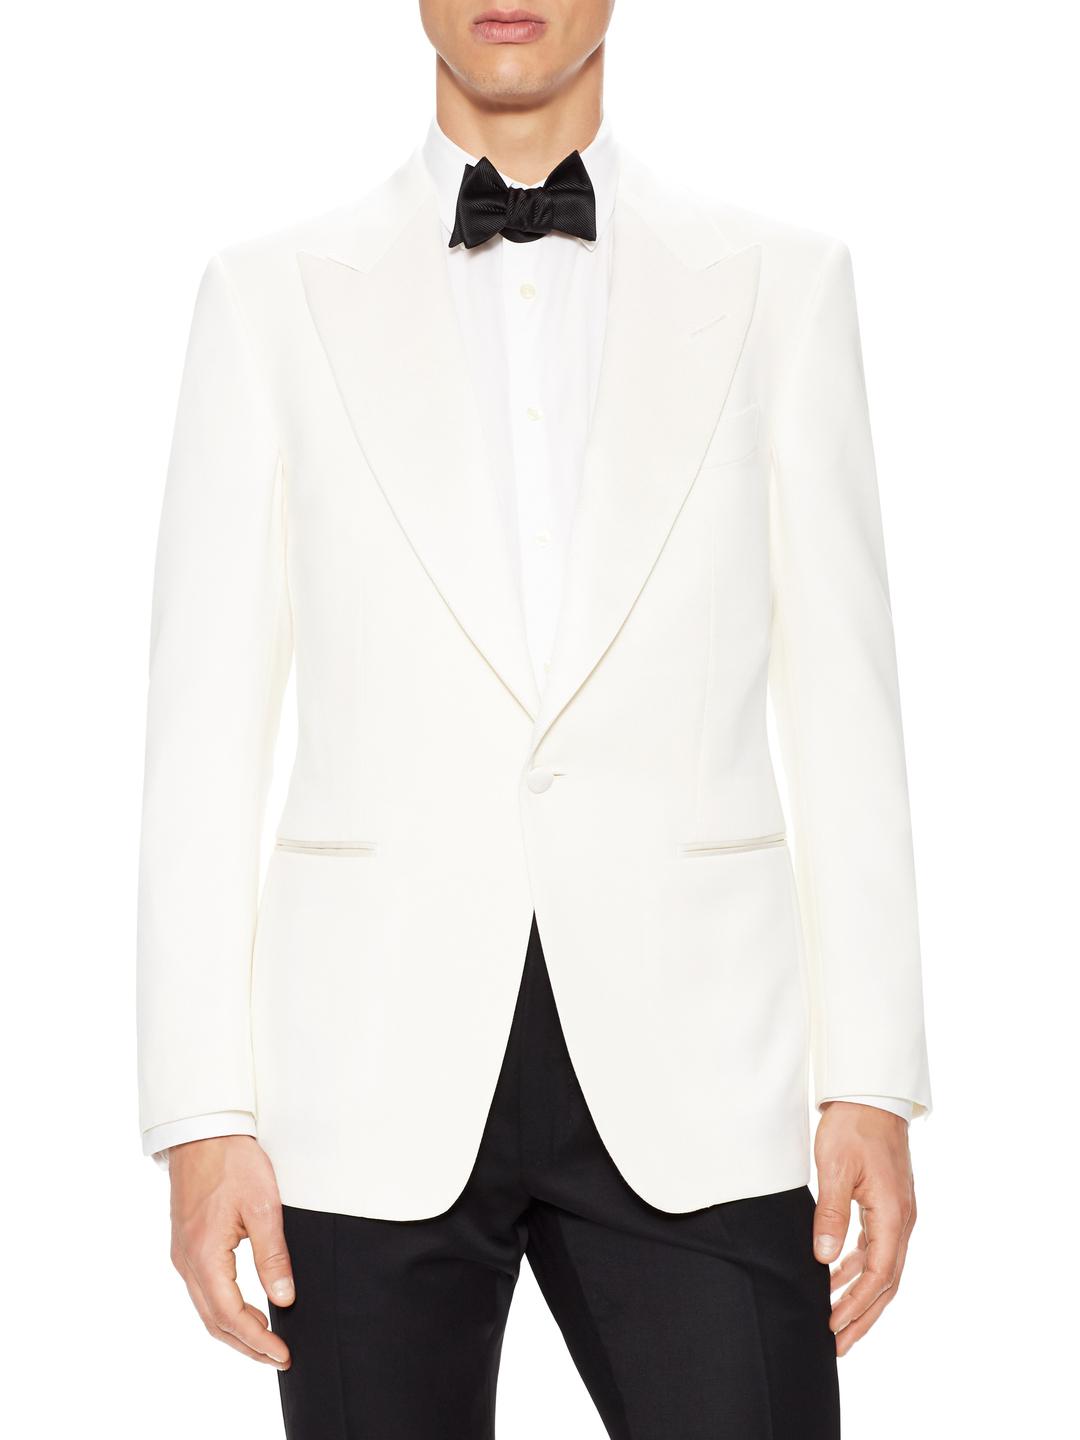 Tom Ford Wool Peak Lapel Dinner Jacket in White for Men - Lyst